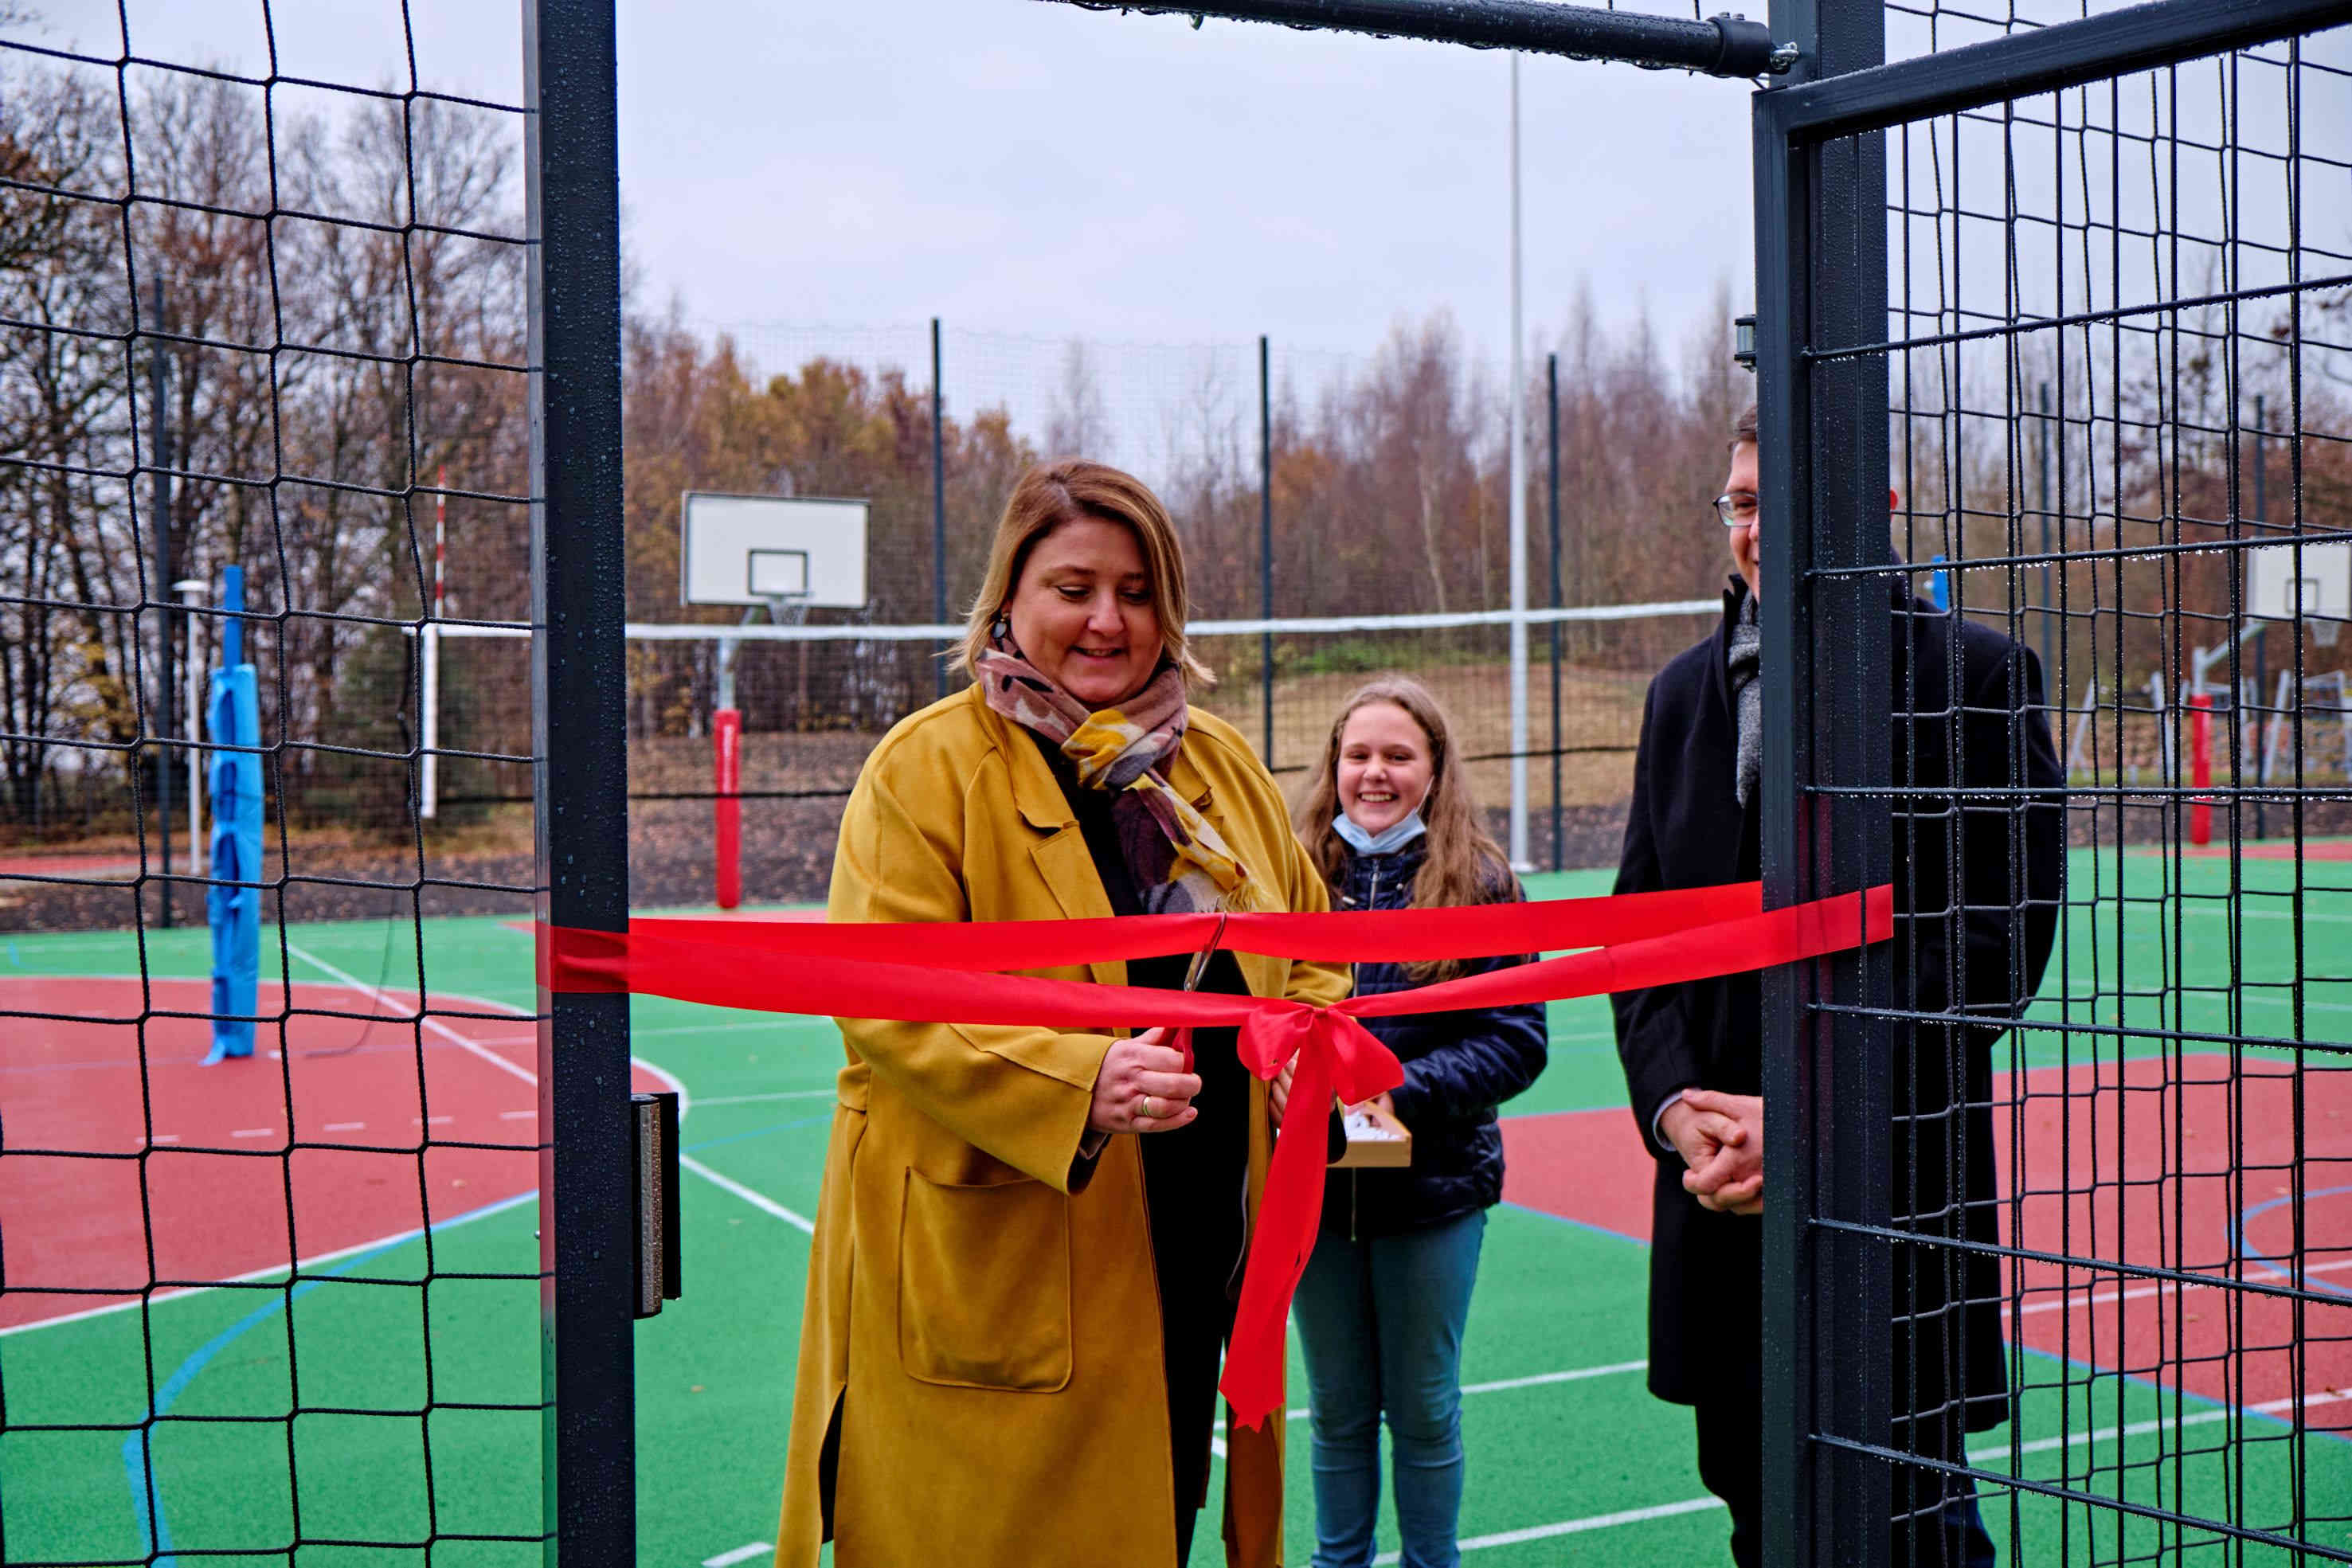 Otwarcie boisk szkolnych przy SP8 w Gliwicach-Bojkowie foto: M. Buksa